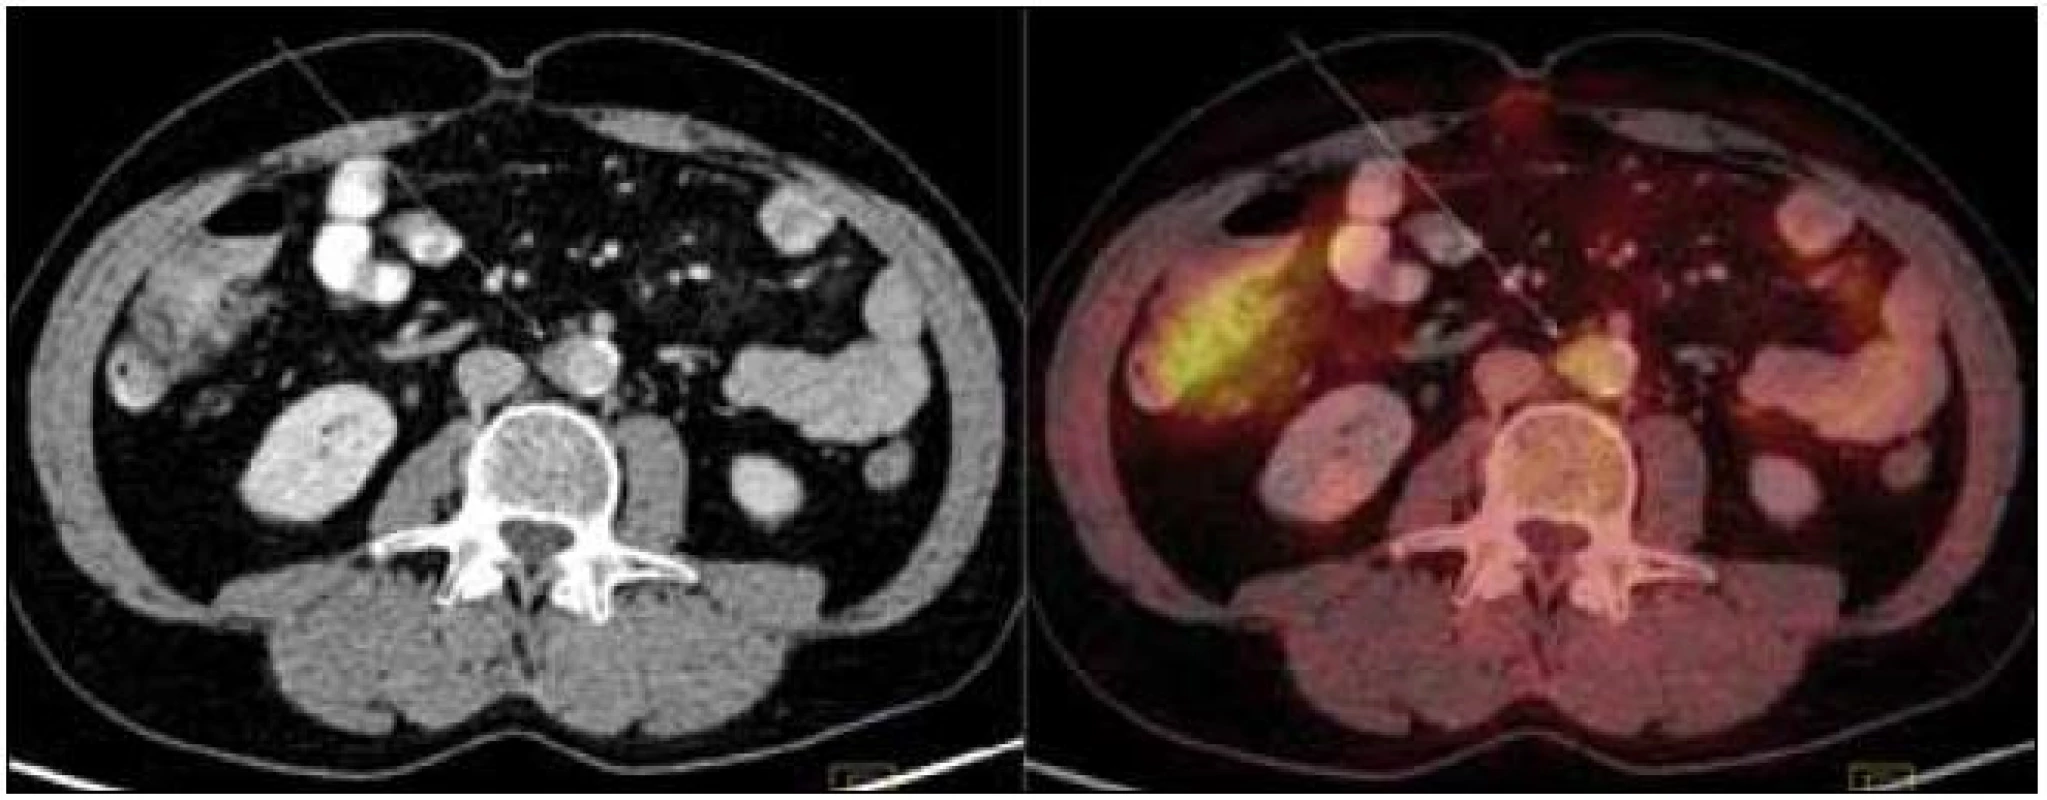 PET-CT zobrazení břicha. Zneostření zevních kontur břišní aorty a nepravidelné zesílení stěny místy až na 9 mm v průměru s lehce zvýšeným metabolizmem glukózy (označeno šipkami). Lehce vyšší aktivita ve vzestupném tračníku je variantou fyziologického zobrazení.